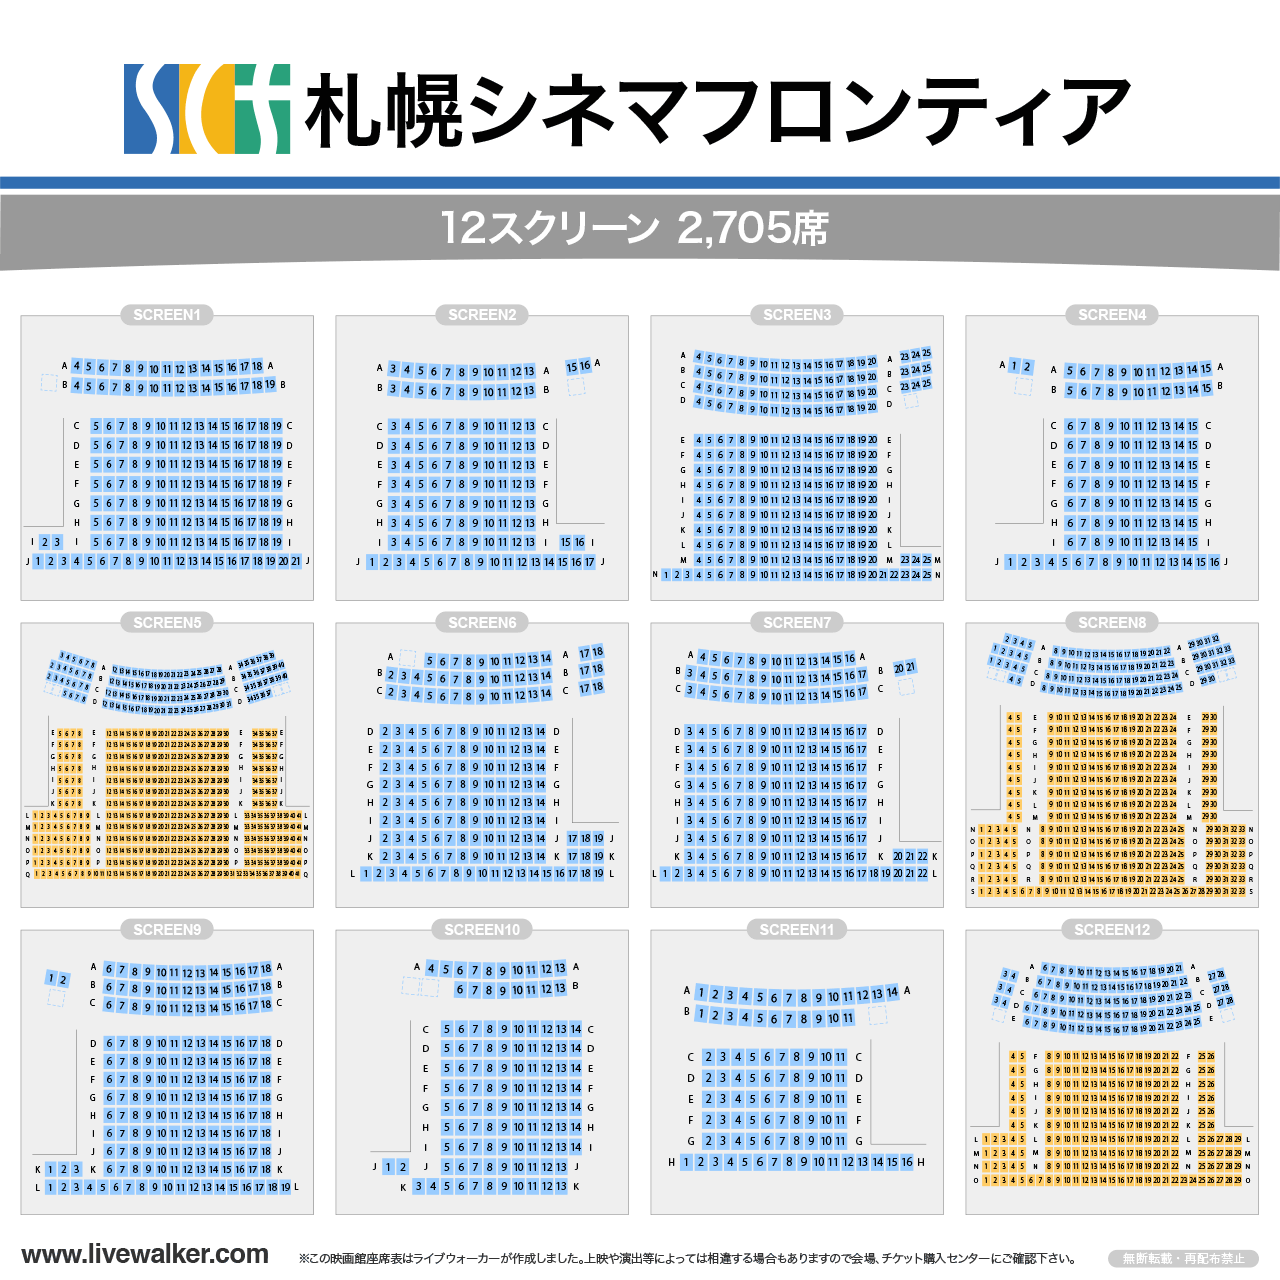 札幌シネマフロンティアスクリーンの座席表